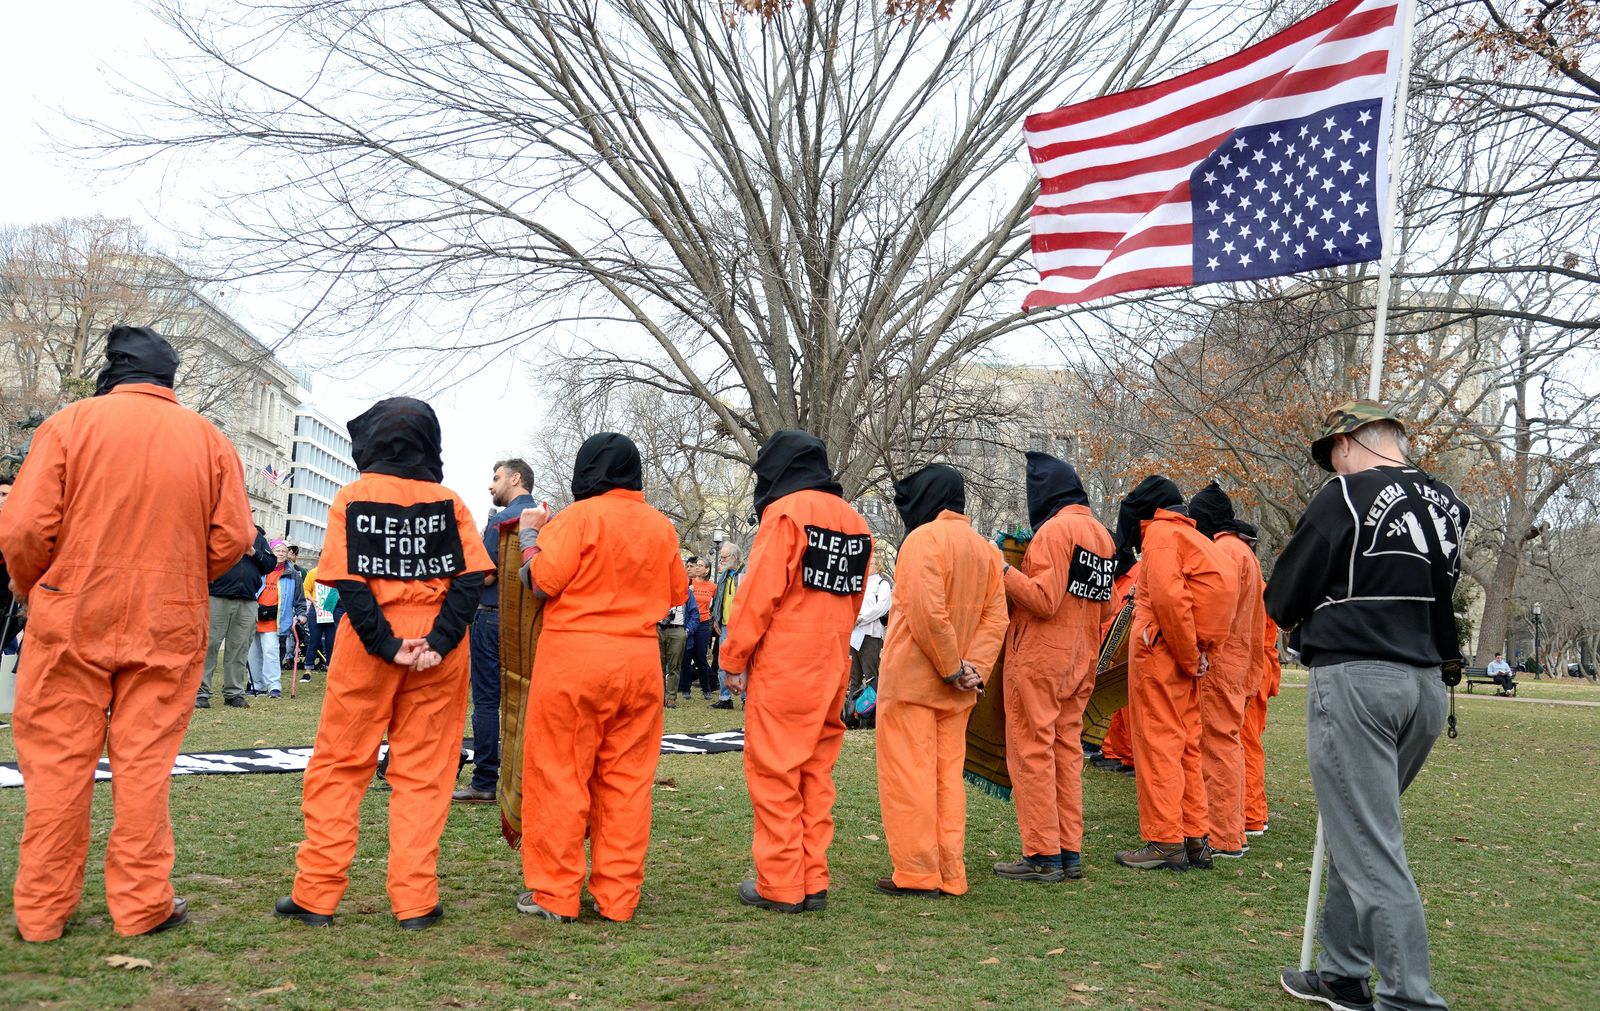 نشطاء يرتدون زي السجناء في مظاهرة تطالب بإغلاق معتقل غوانتانامو، ومحاسبة المتورطين في التعذيب، واشنطن، 11 يناير 2020 - REUTERS